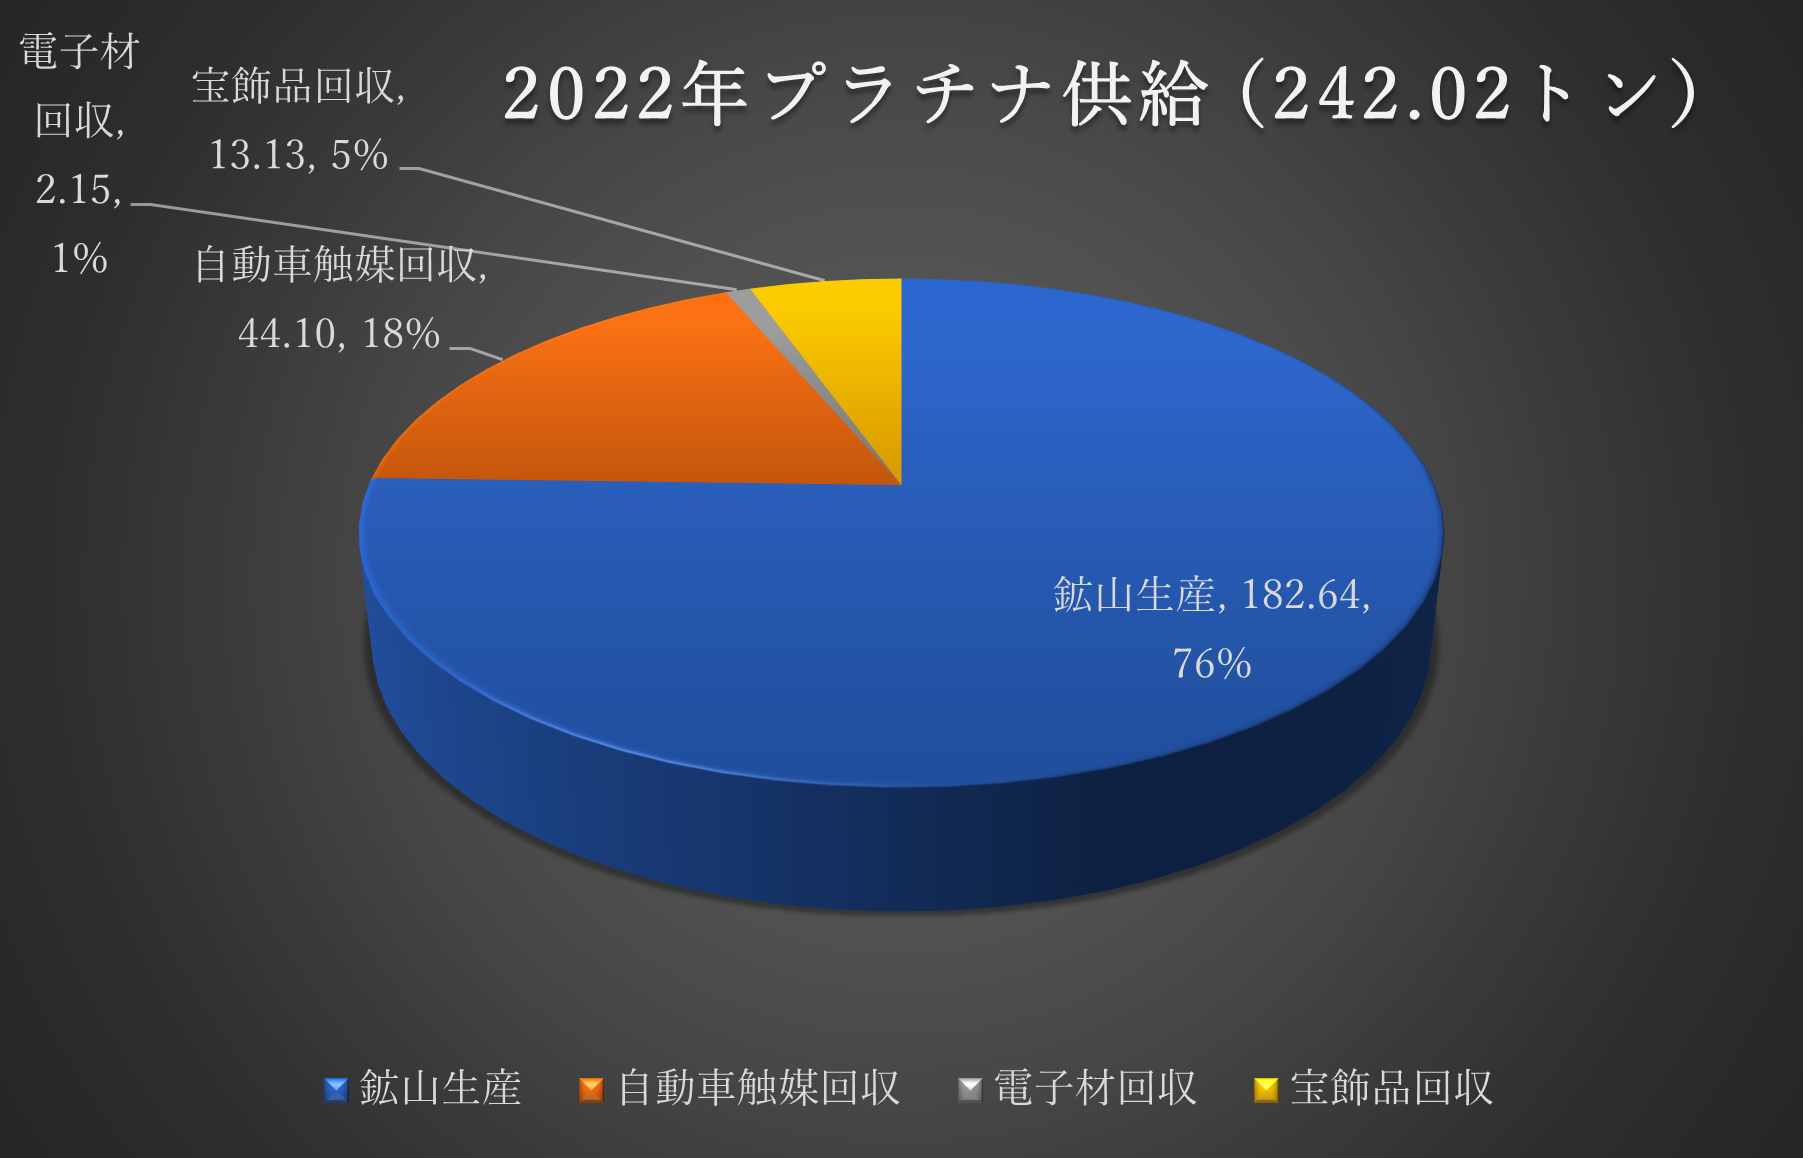 この表はMetals Focus社の最新の統計である「PGM Focus 2022」からの最新の数字をトロイオンスから我々日本人にわかりやすいトンに直したものです